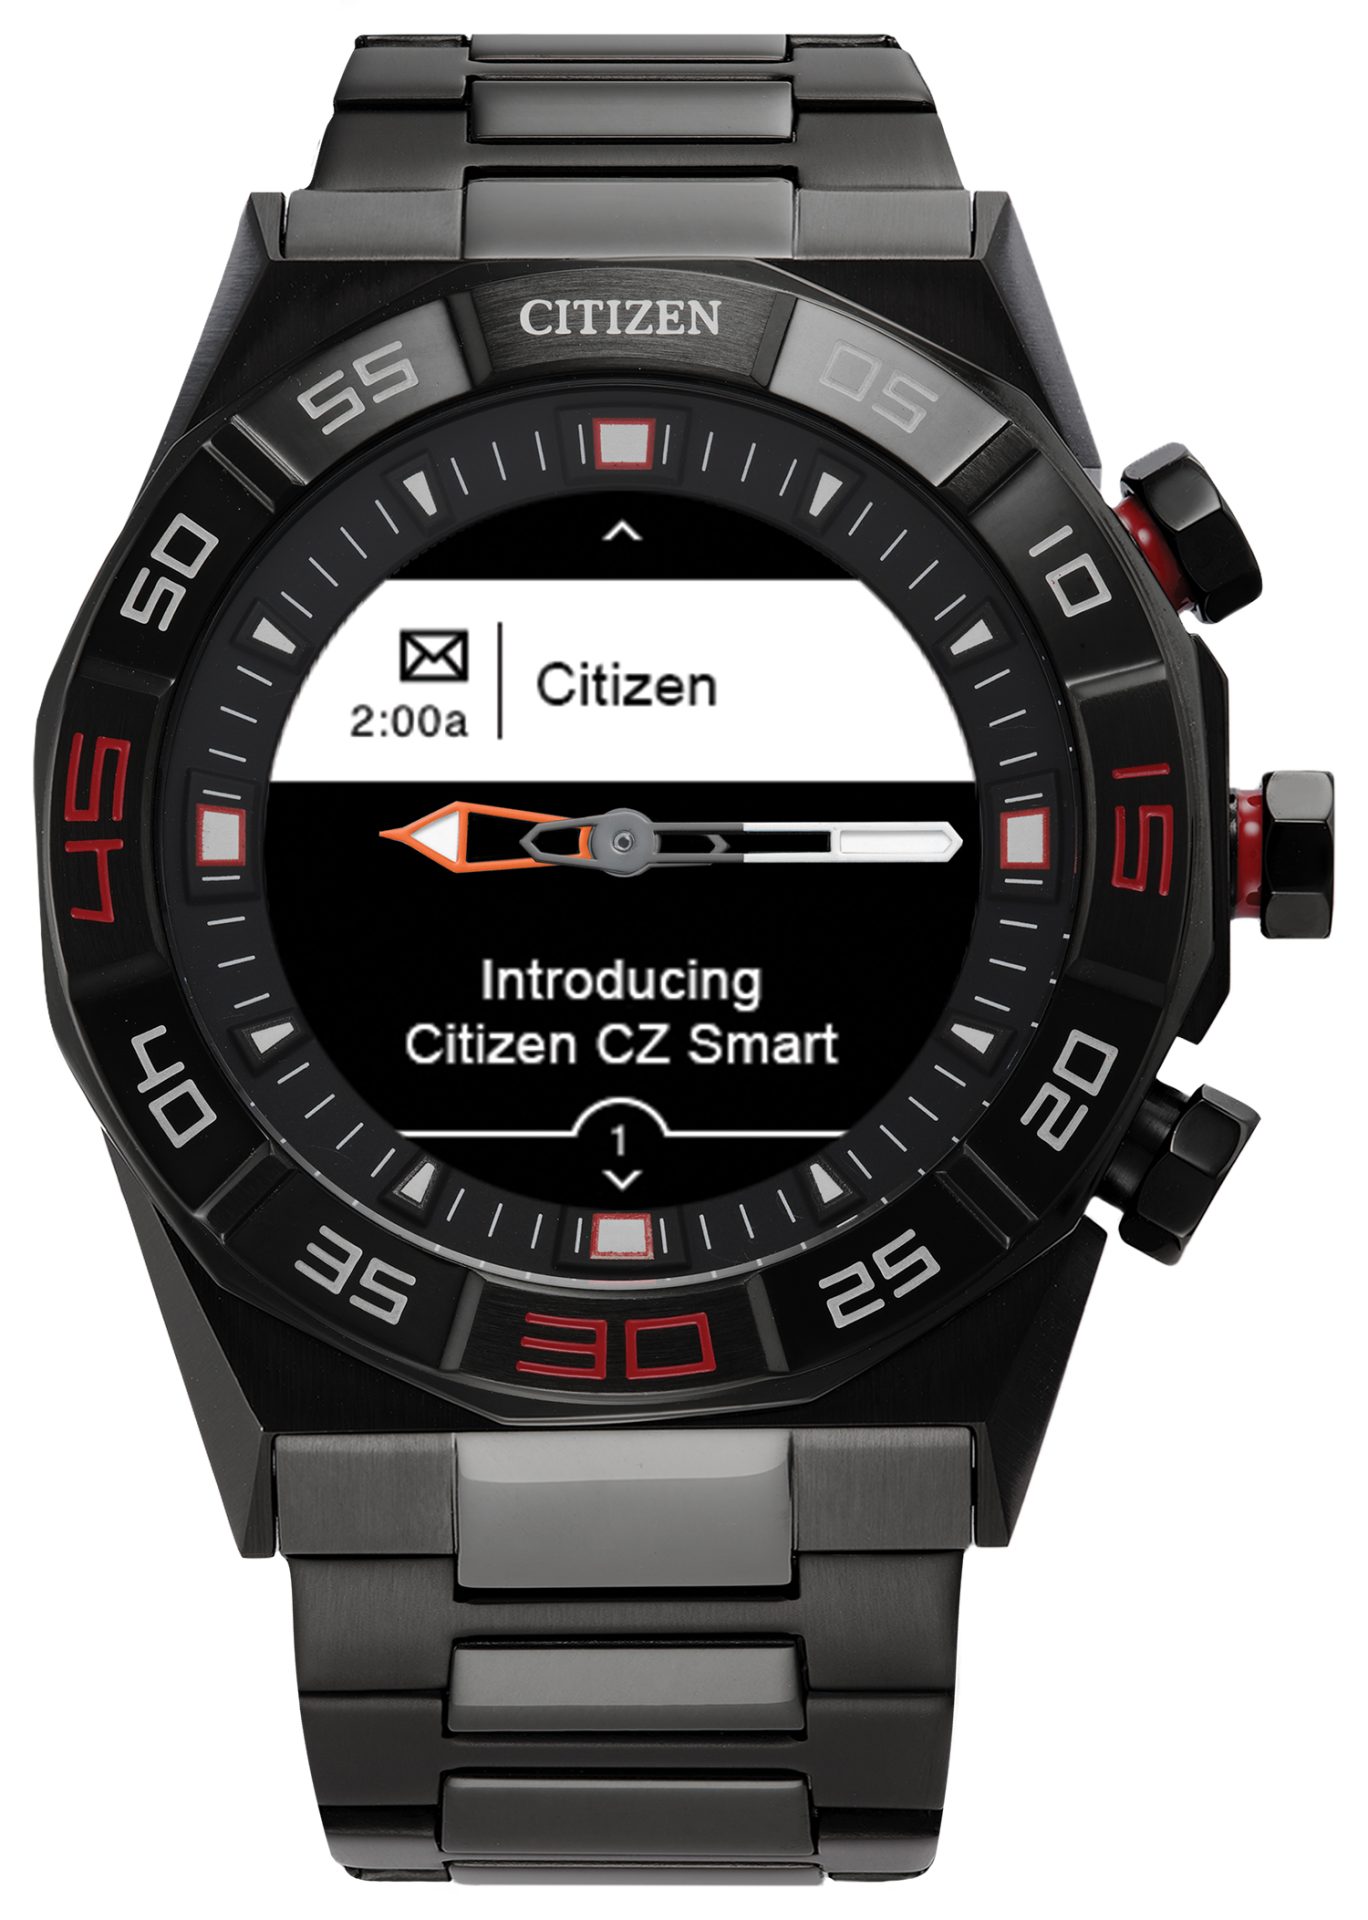 Citizen CZ Hybrid smartwatch